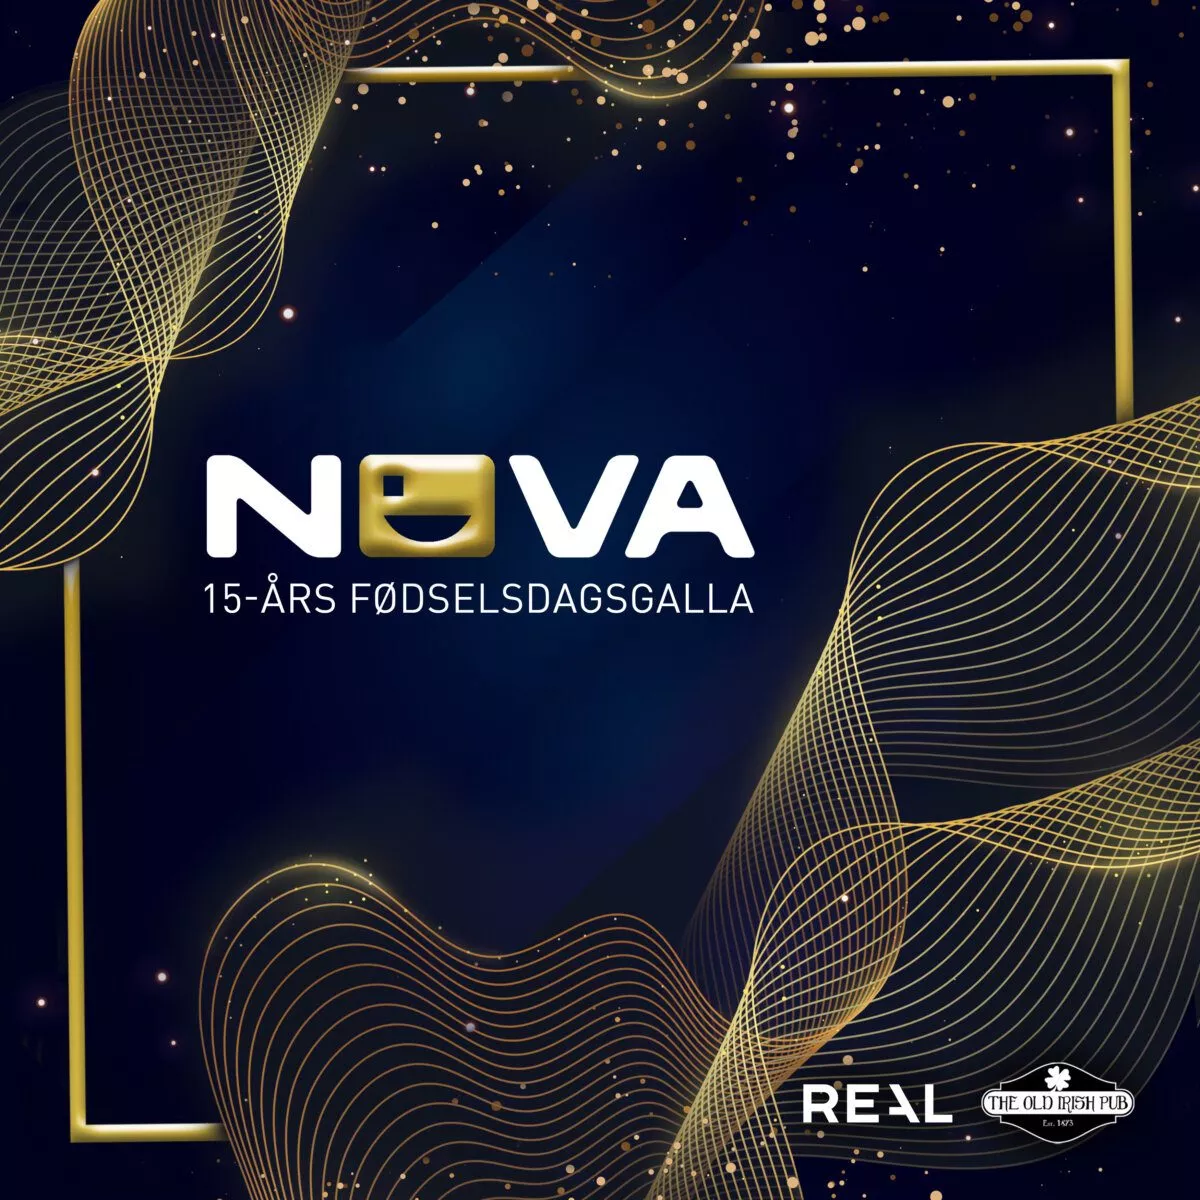 Nova galla 15 år